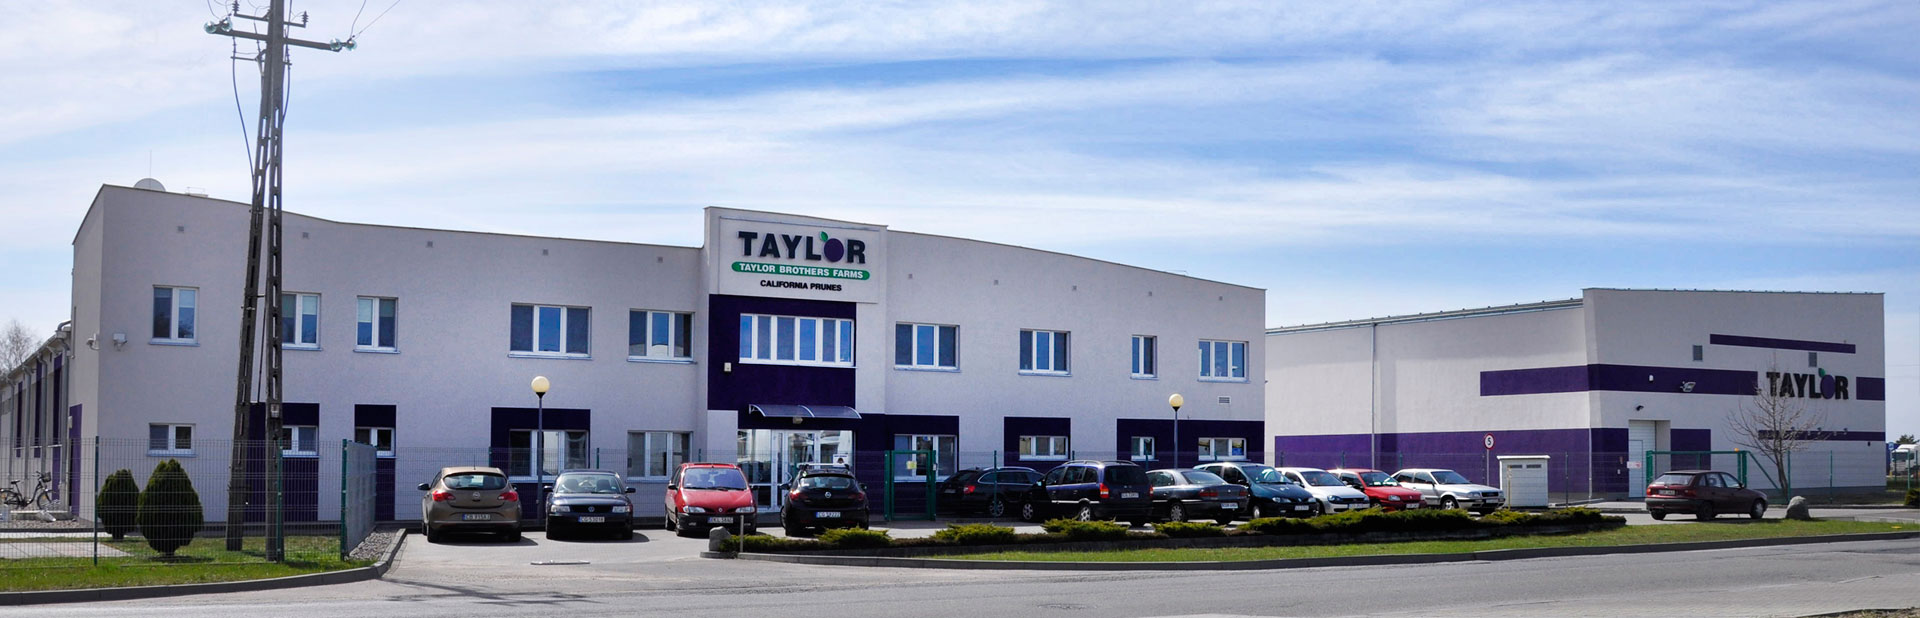 Budynek firmy Taylor projekt Tomasz Czajka